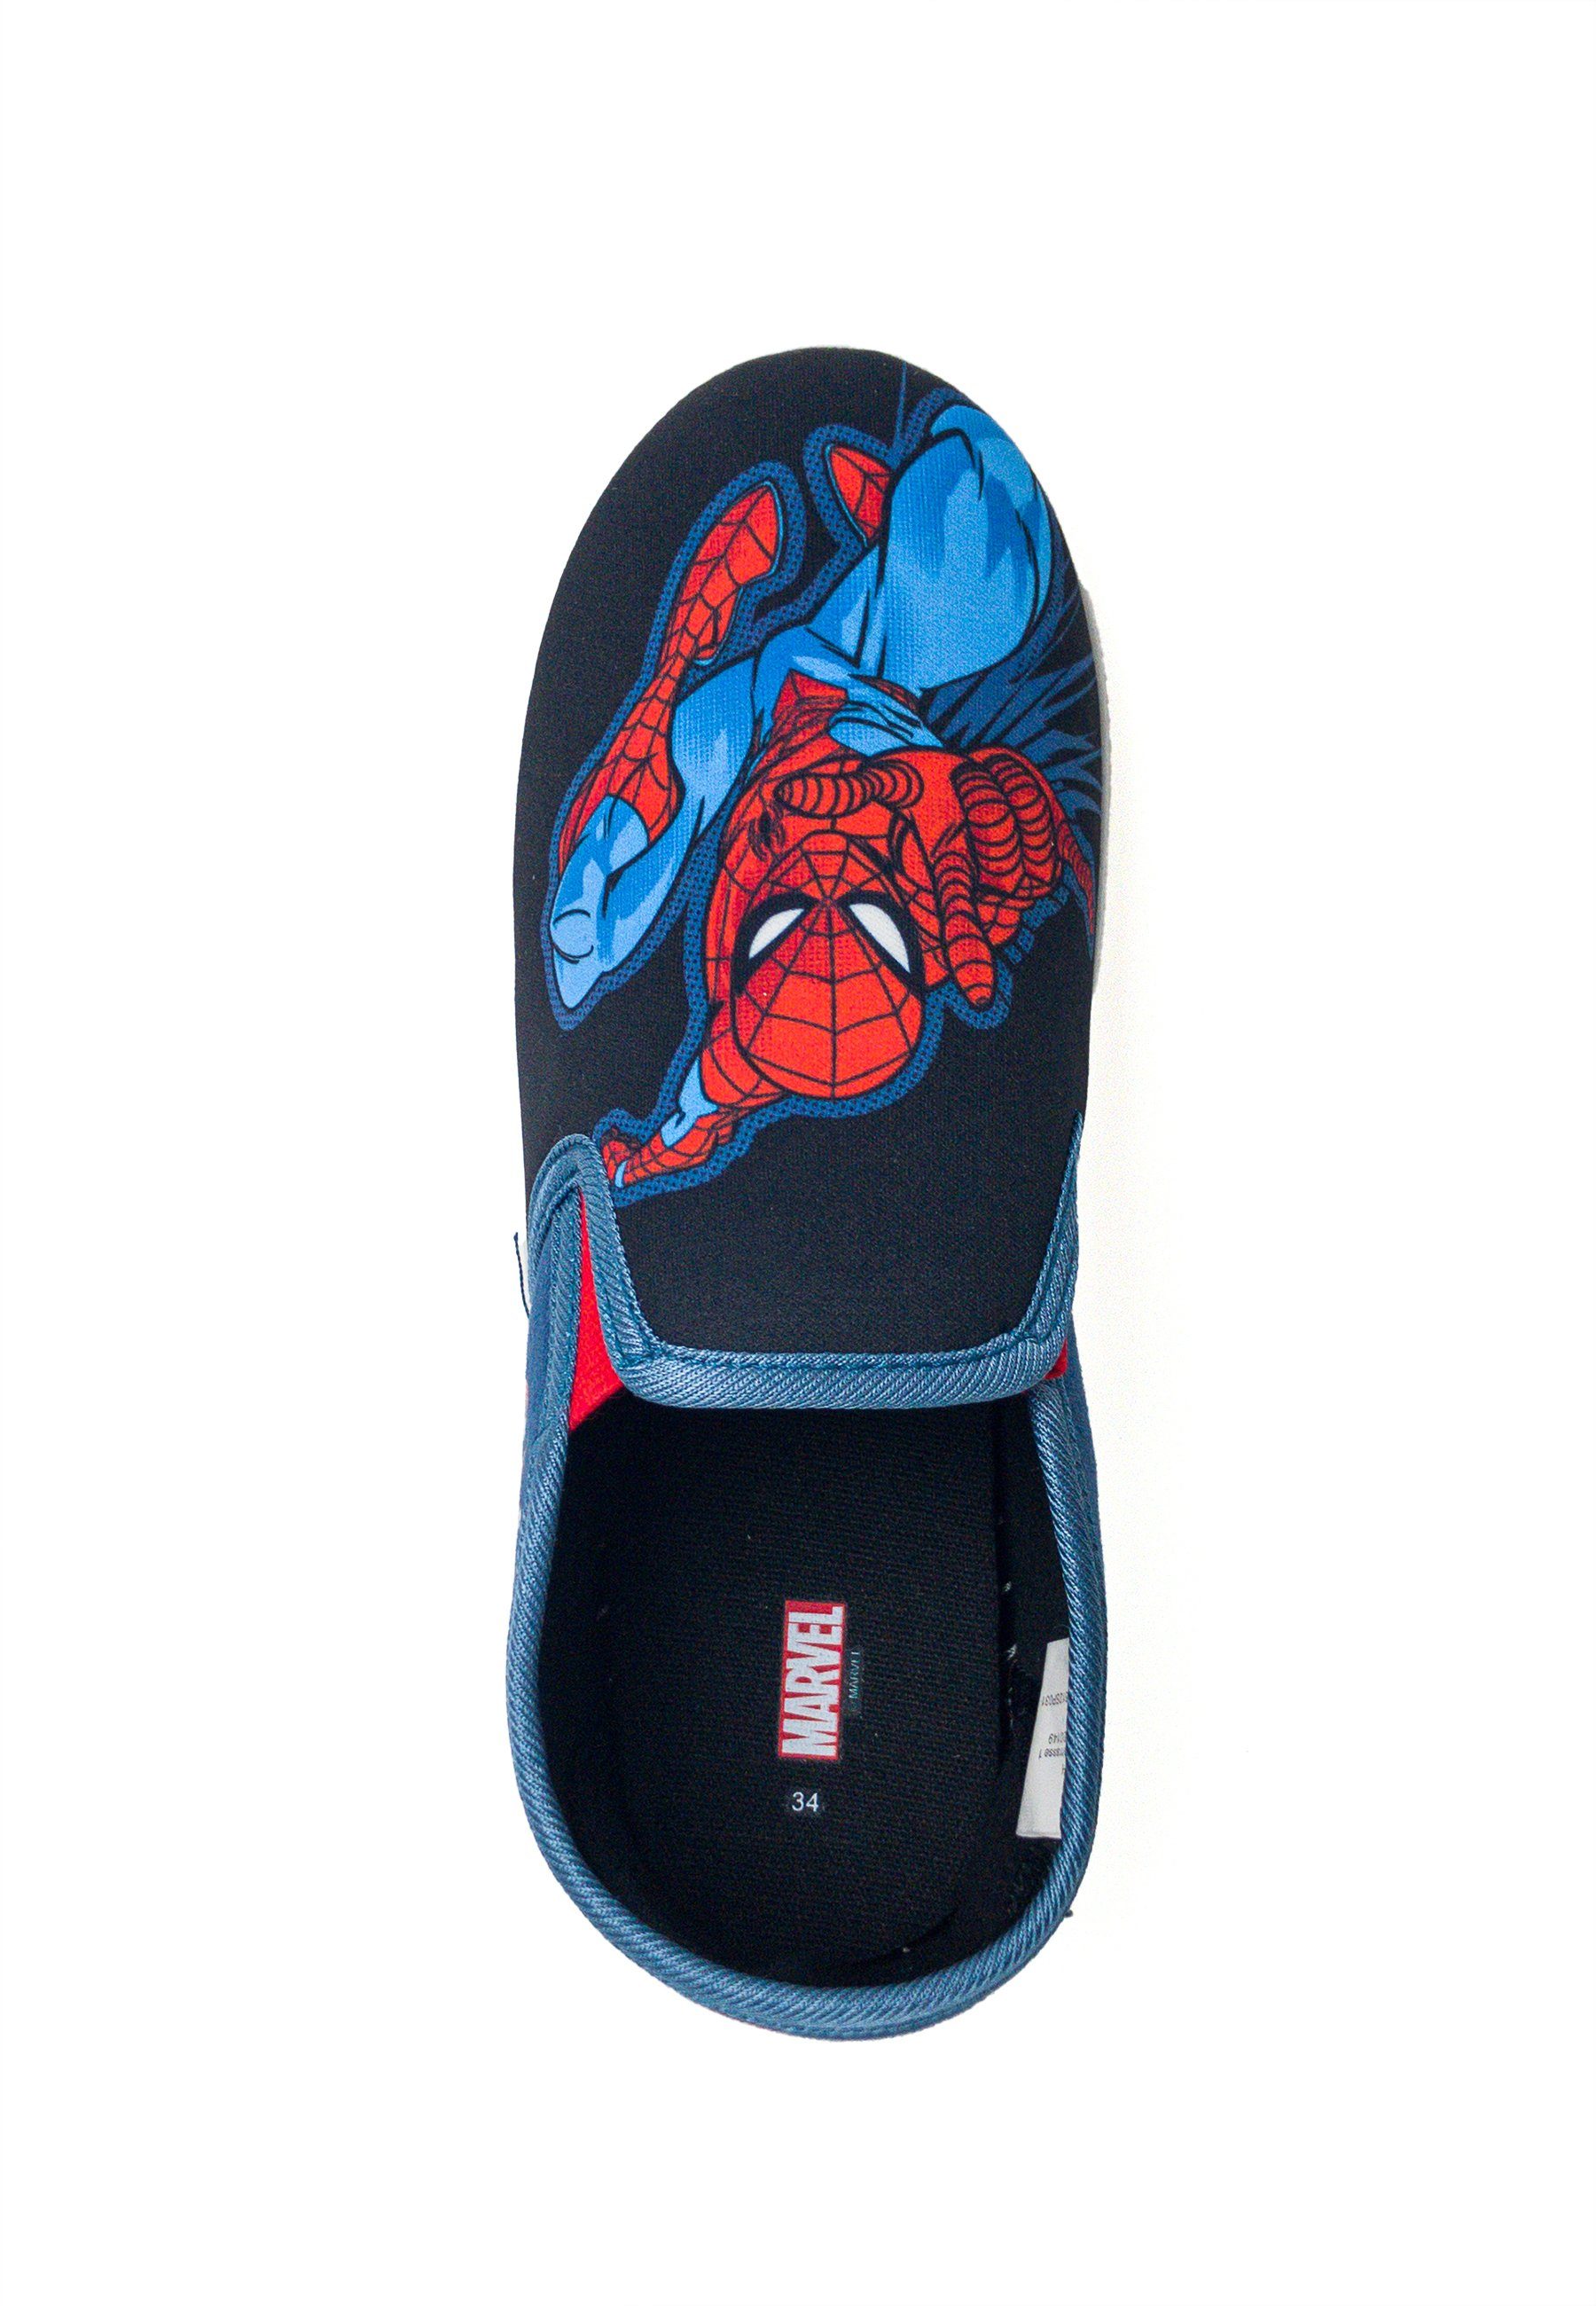 Elastikband. An- Einfaches Amazing dank Slip-On Slip-On Kids2Go Action-Pose Ausziehen Spiderman Kids2Go und Sneaker